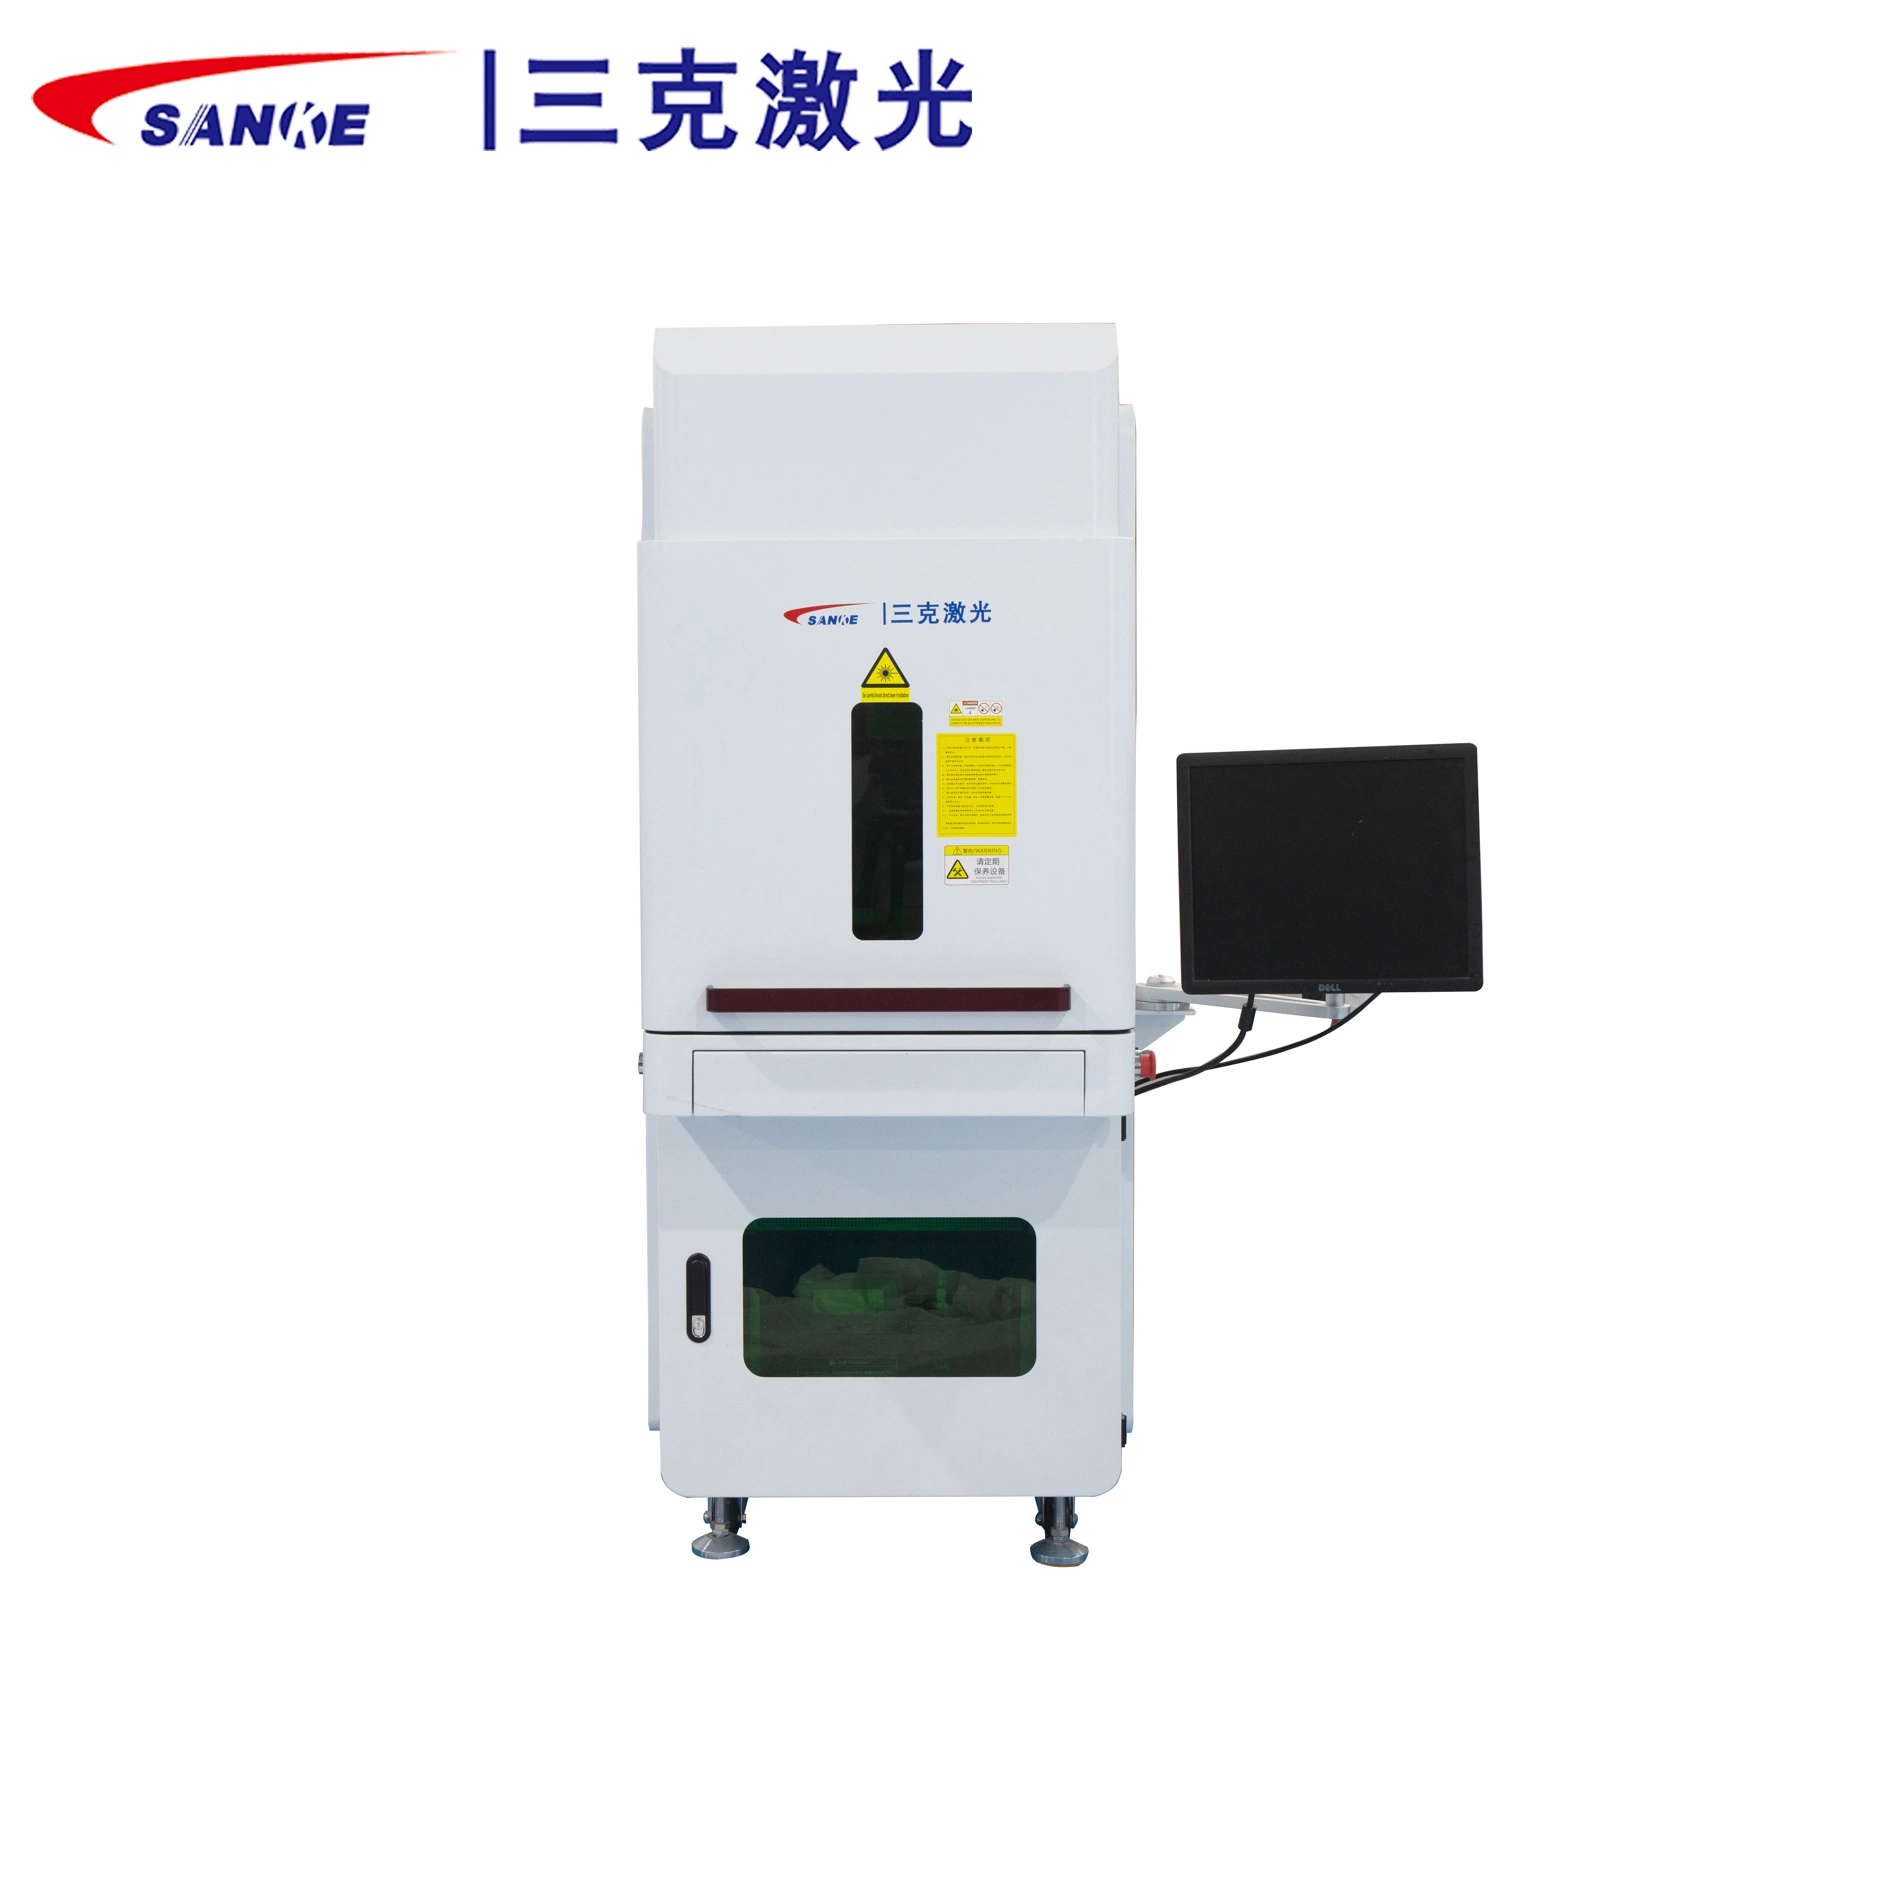 Cold UV Laser Marking Machine